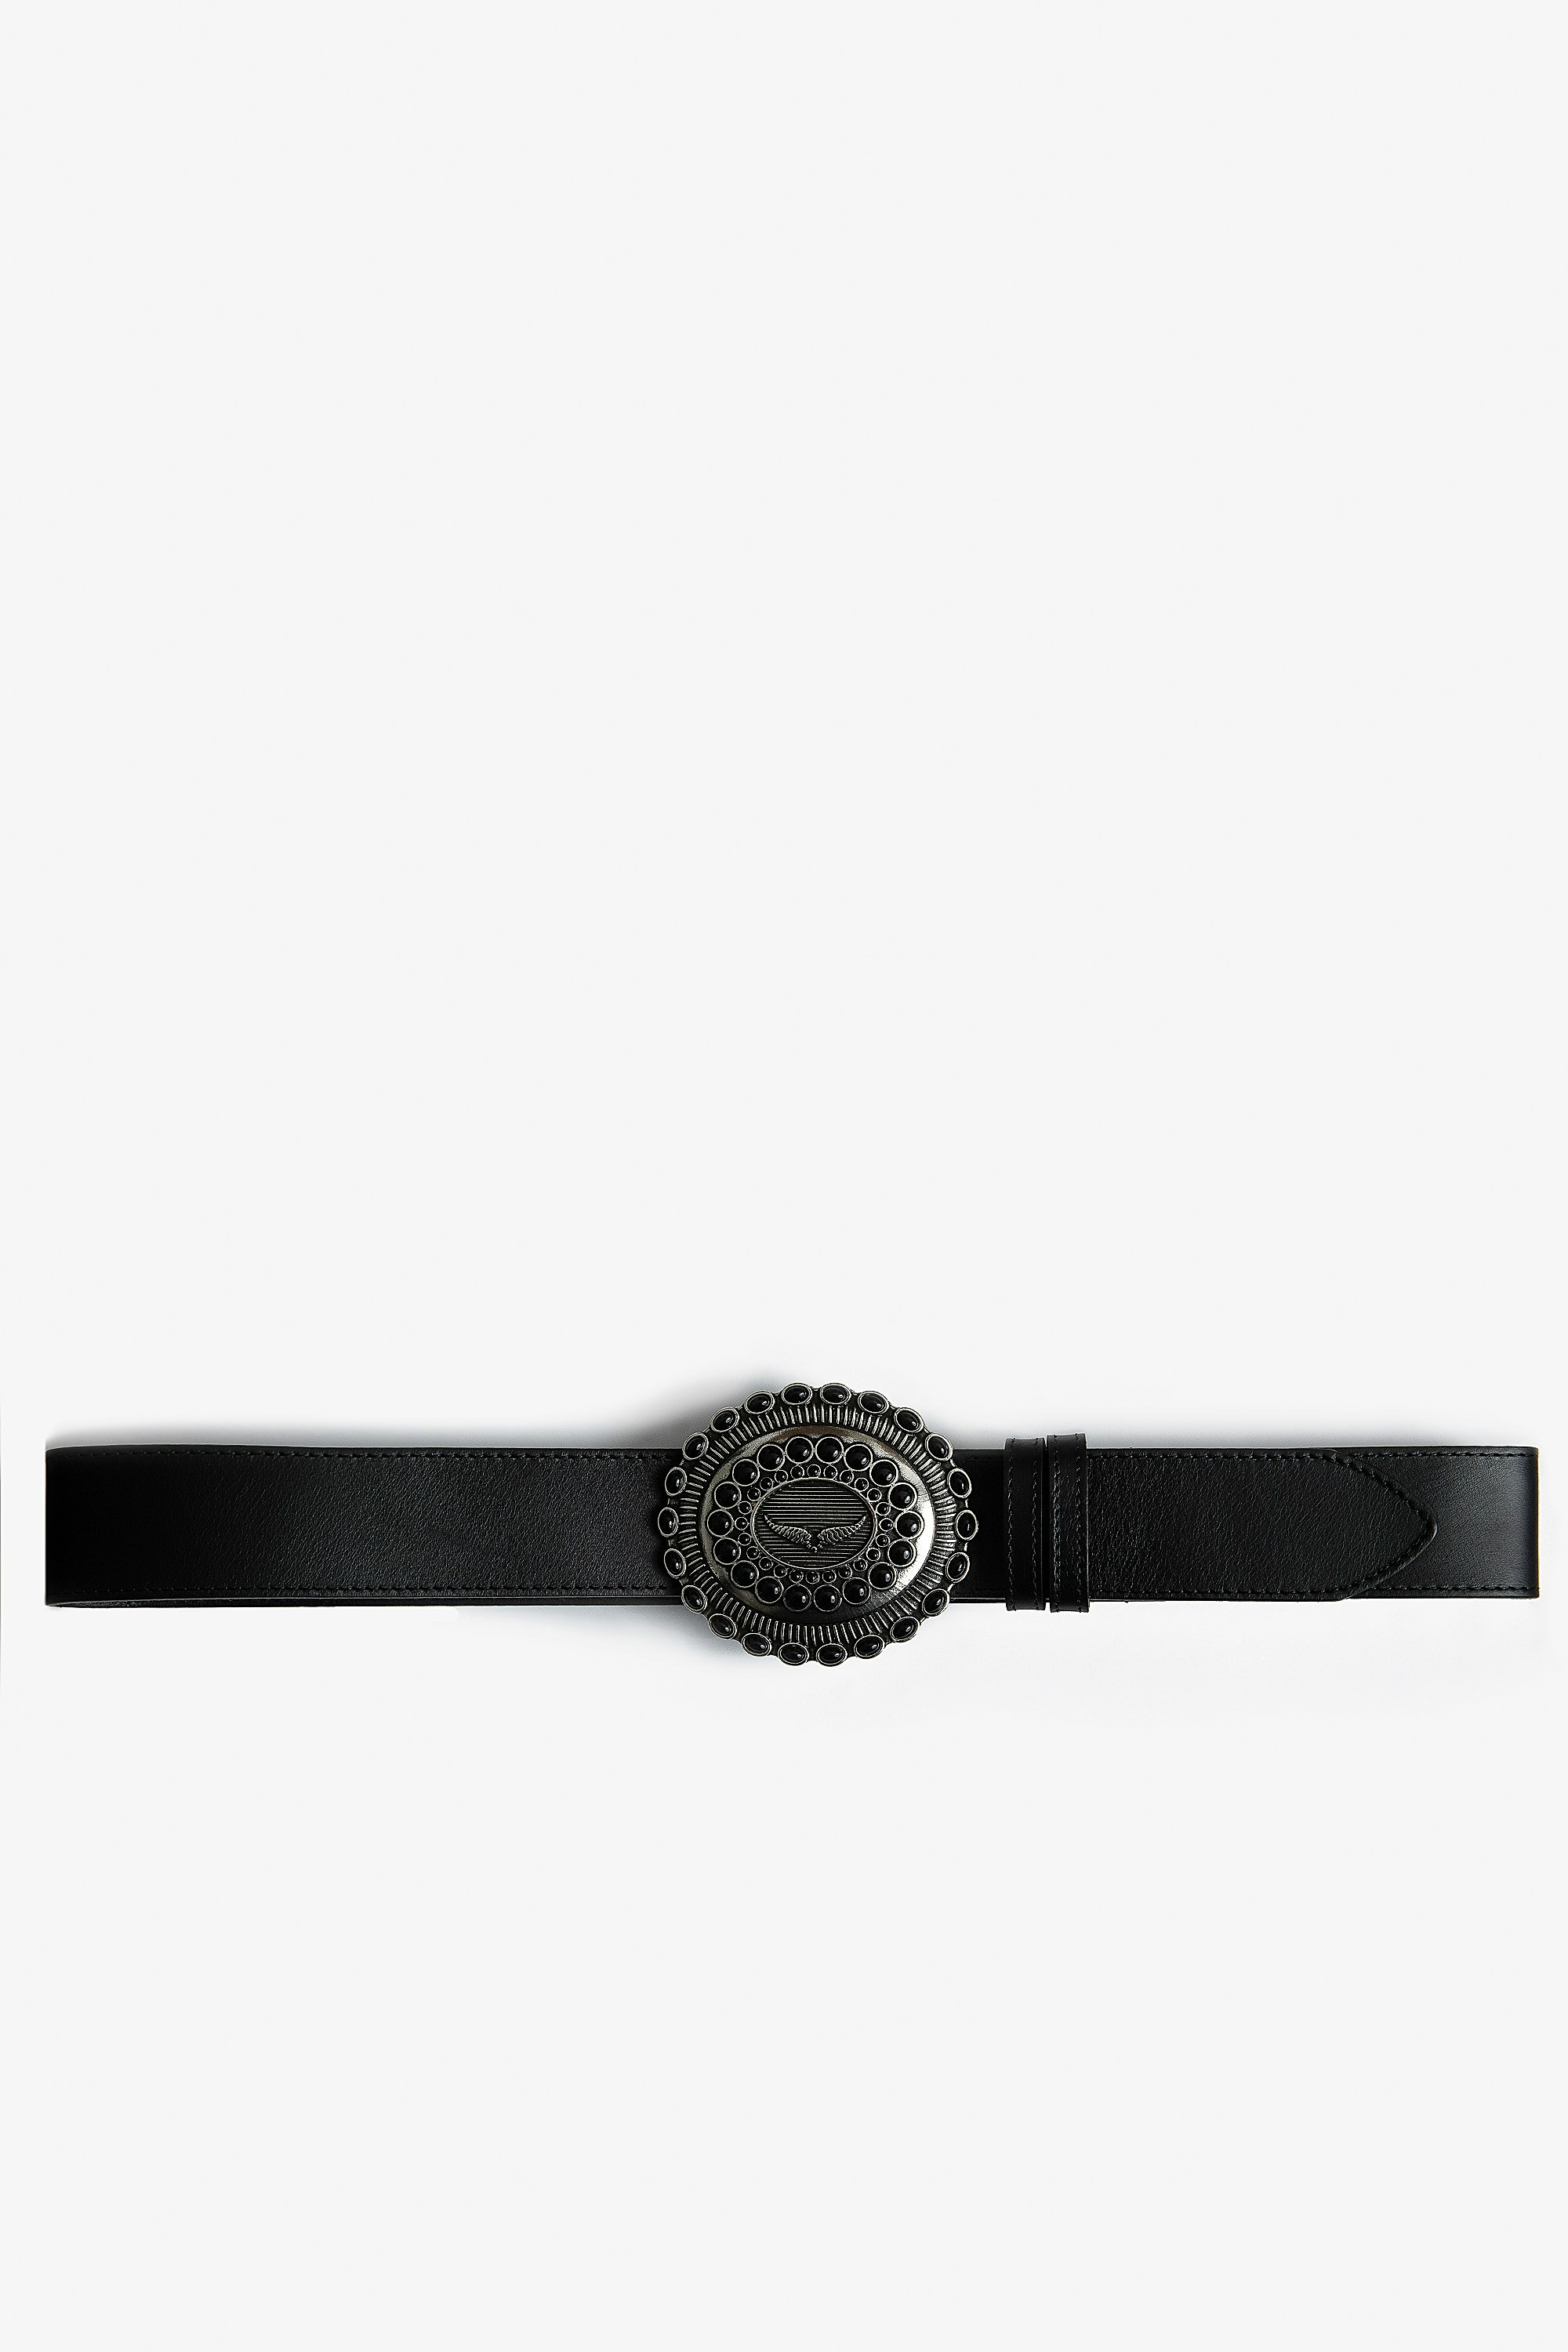 Santa Fe Belt Women’s belt in black leather with jewel-studded buckle